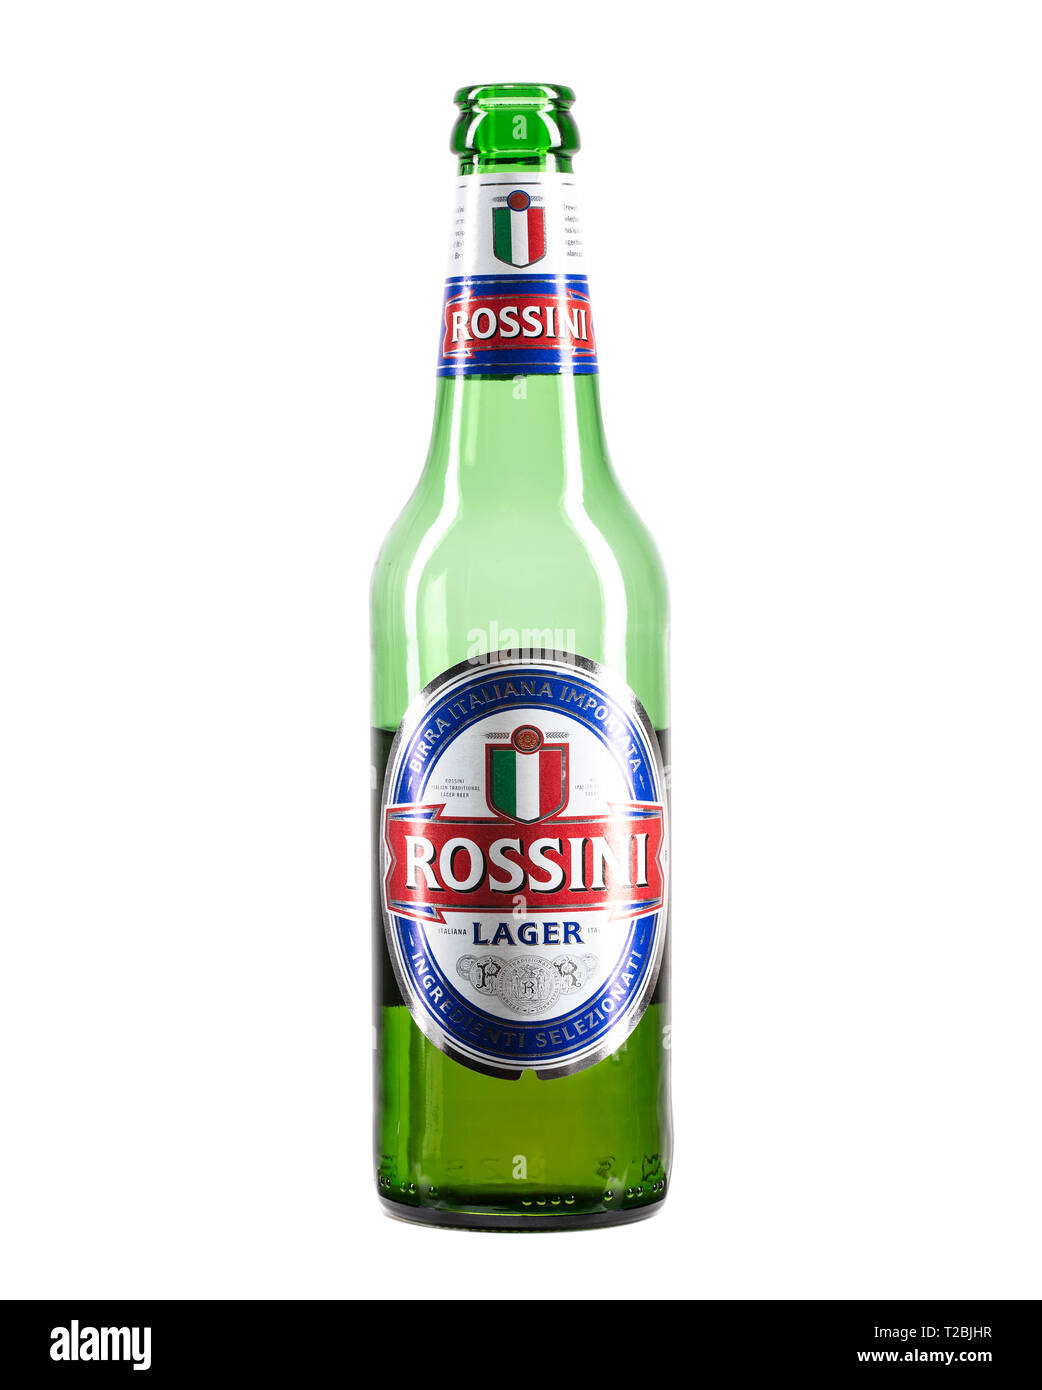 SWINDON, UK - APRIL 01, 2019: Half full bottle of Rossini Lager beer on a white background Stock Photo